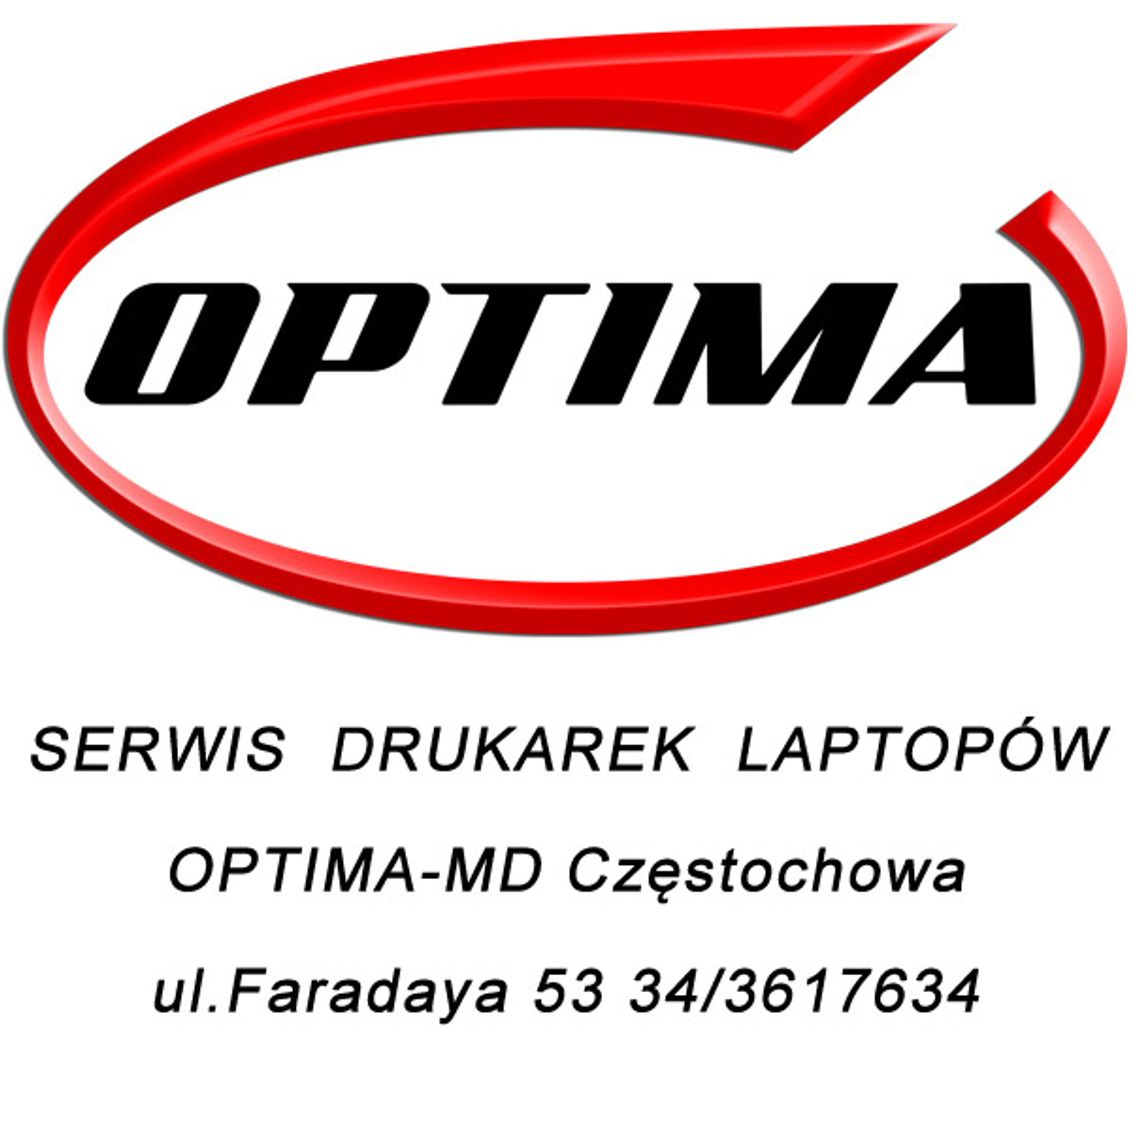 Serwis drukarek i laptopów Optima-md